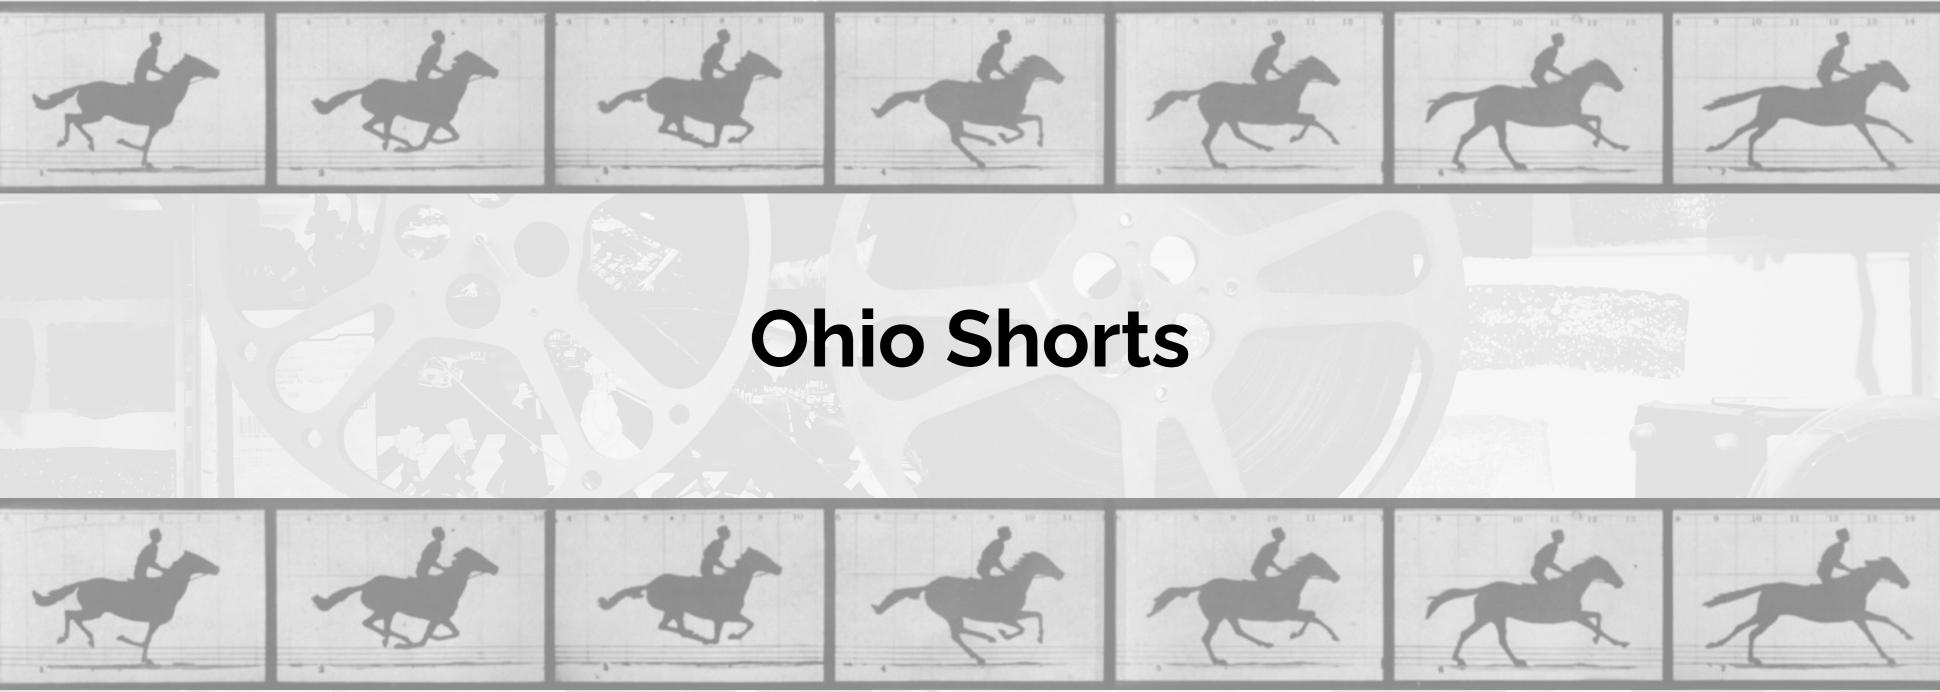 Ohio Shorts